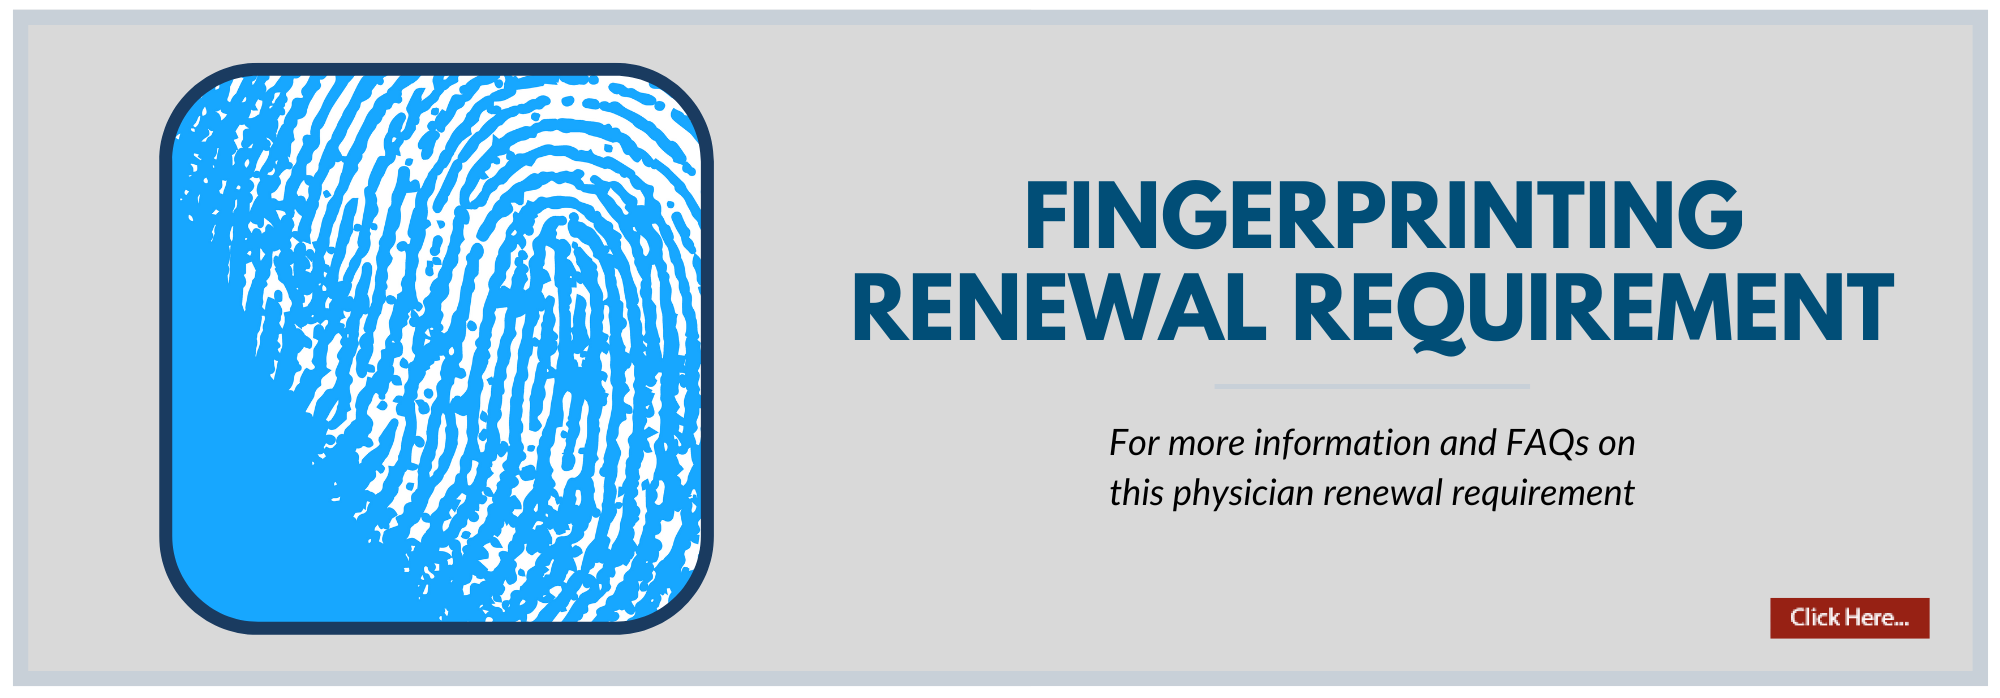 Rotator image for physician fingerprinting